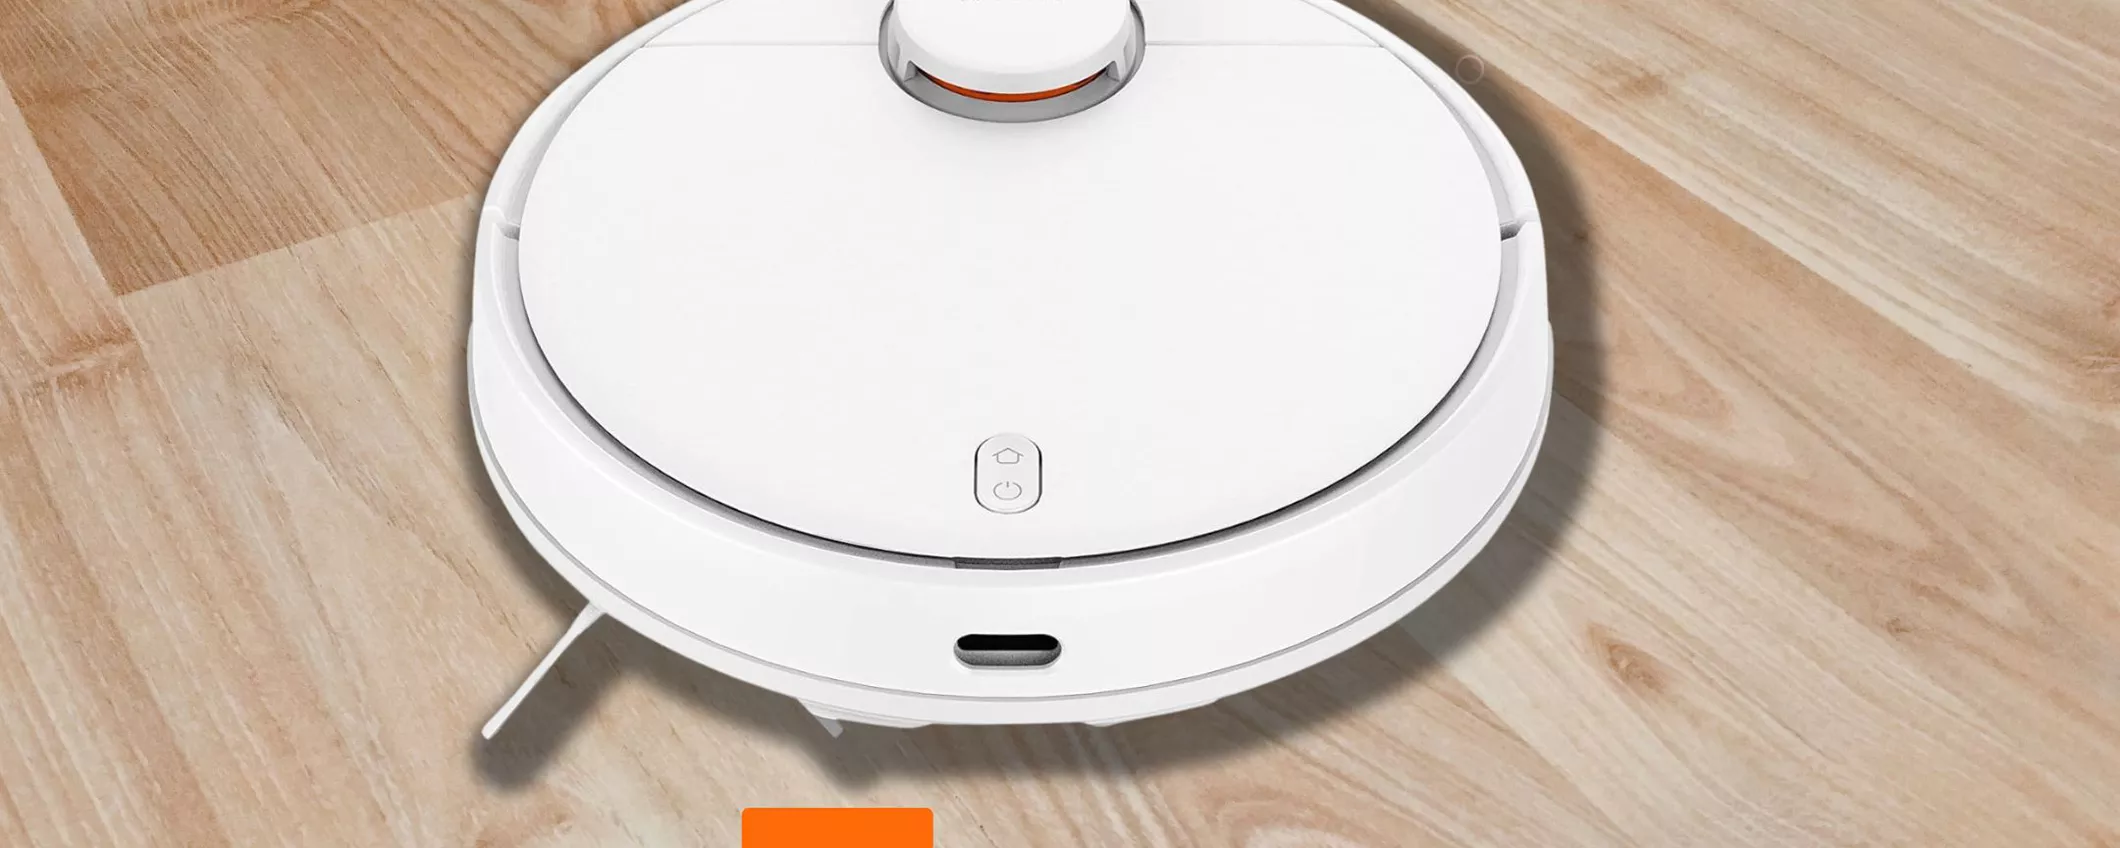 Xiaomi Robot Aspirapolvere: casa sempre pulita e risparmi anche il 31%!